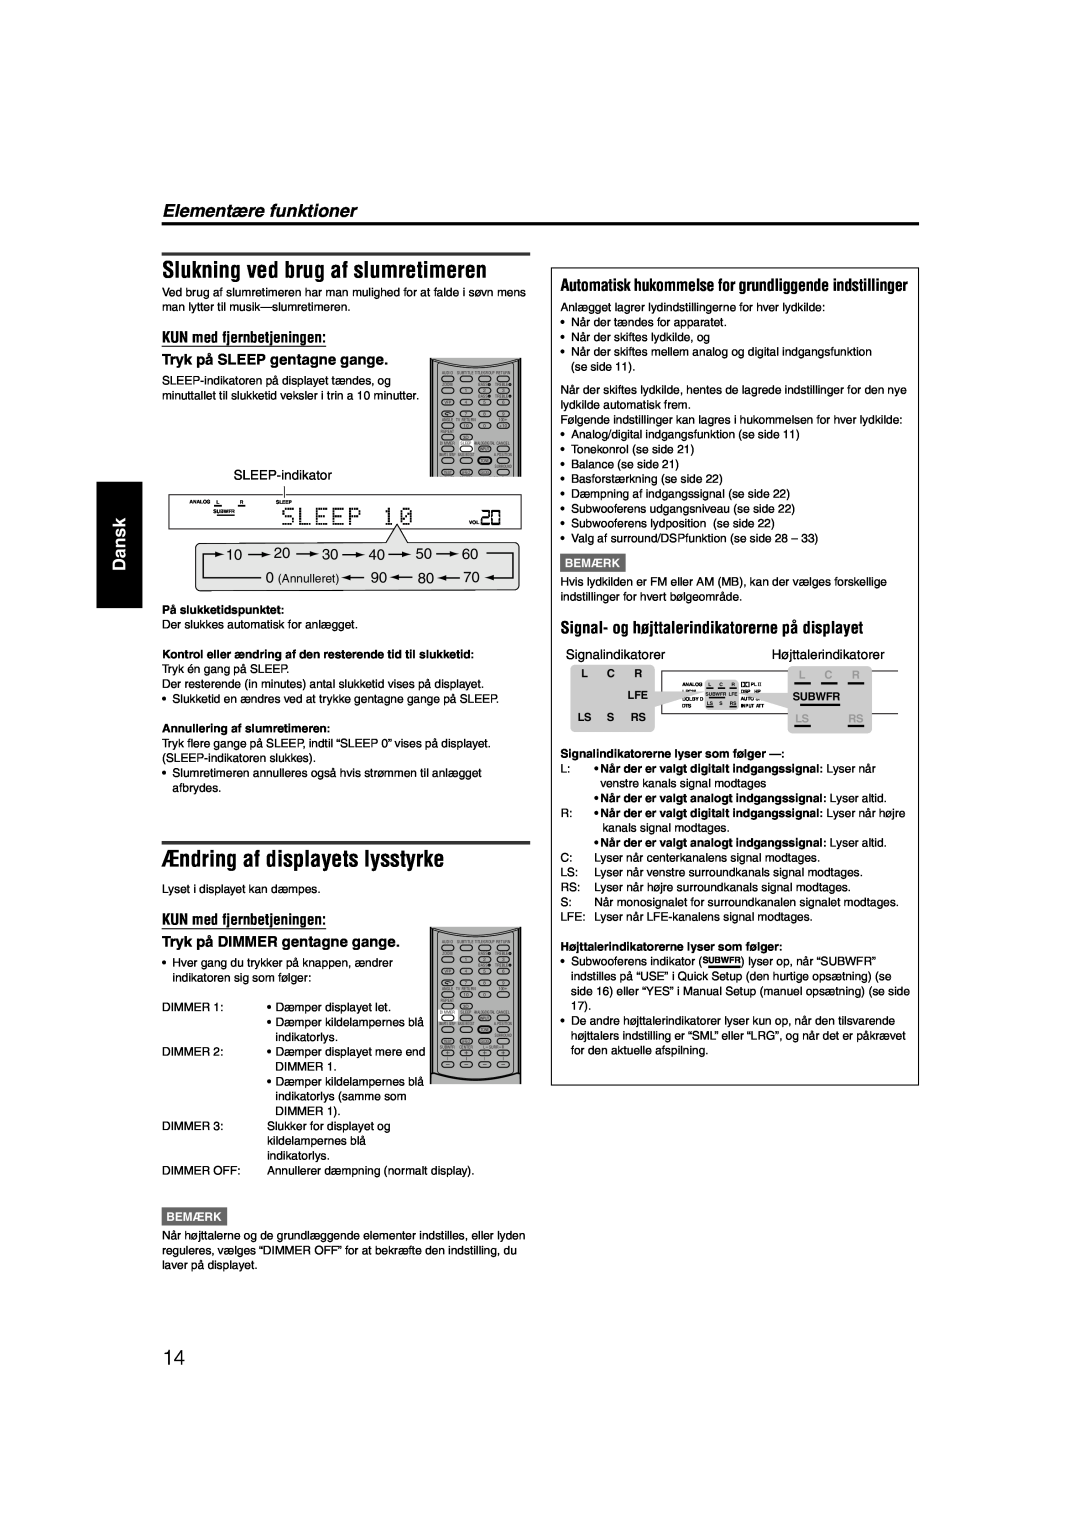 JVC RX-ES1SL Slukning ved brug af slumretimeren, Ændring af displayets lysstyrke, Elementære funktioner, Dansk, Bemærk 